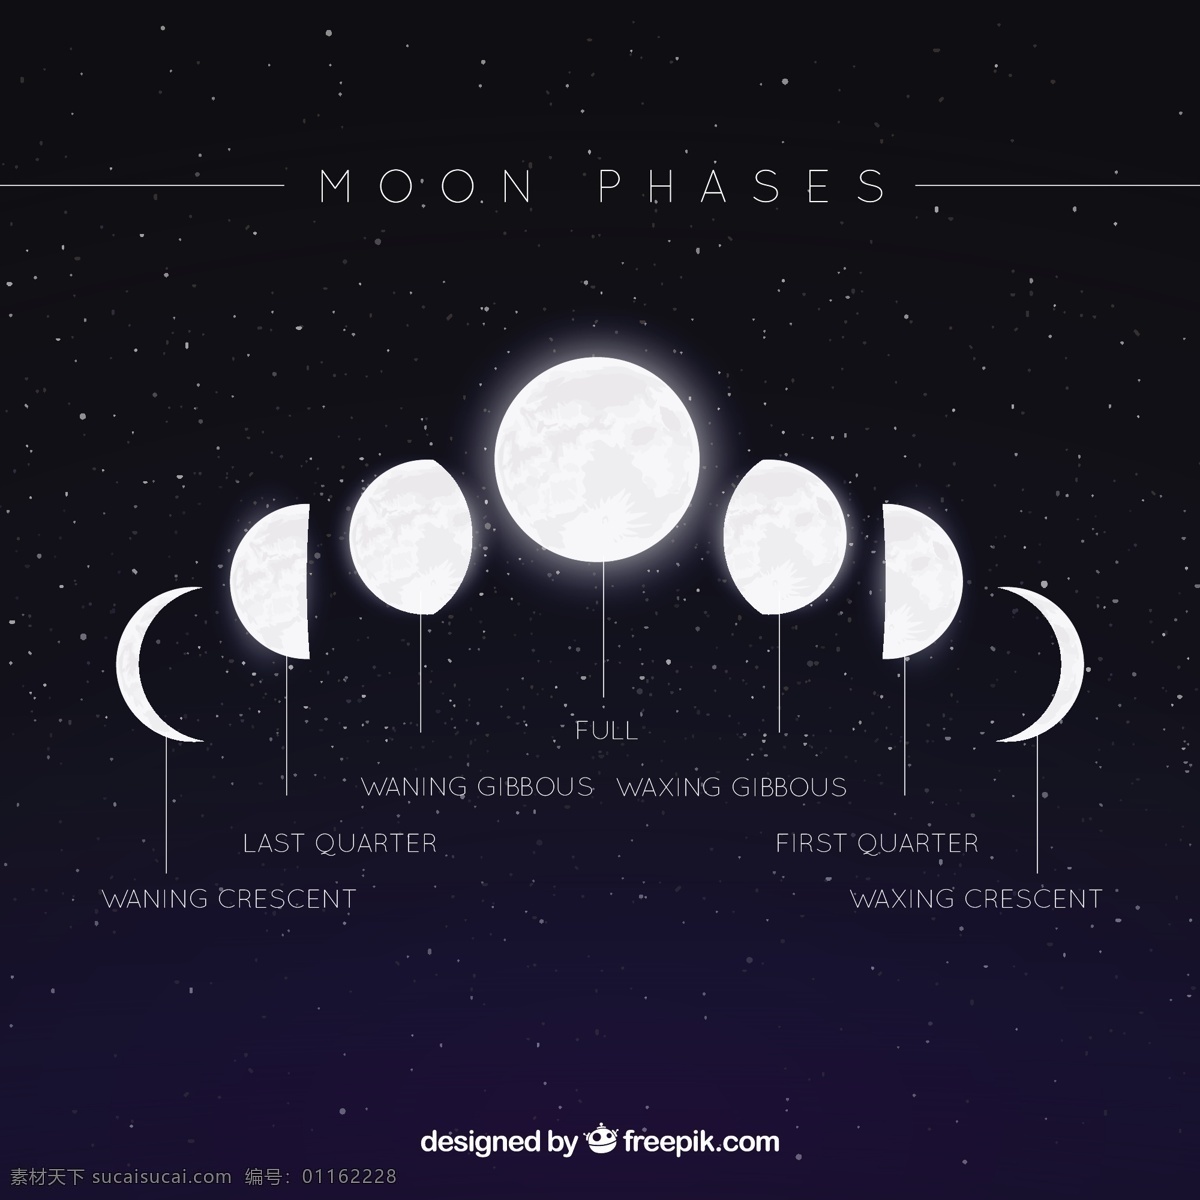 星空 背景 月相 日历 天空 月亮 数字 时间 平面 夜晚 平面设计 时间表 计划者 夜空 宇宙 年 季节 占星术 月 满月 周计划者